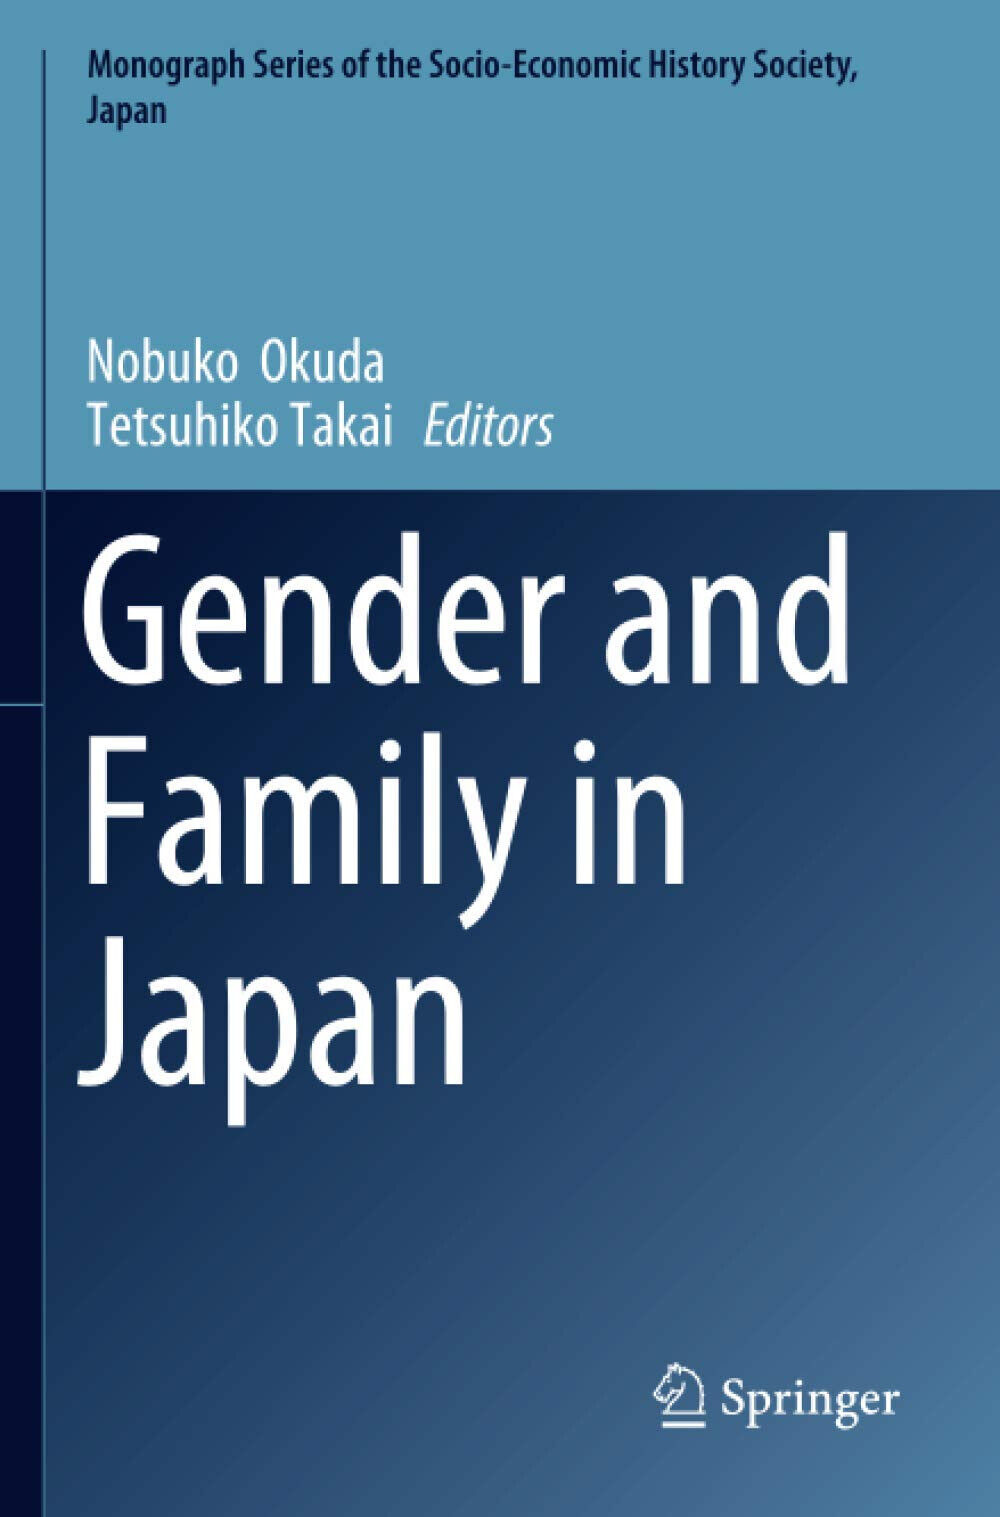 Gender and Family in Japan - Nobuko Okuda - Springer, 2021 libro usato